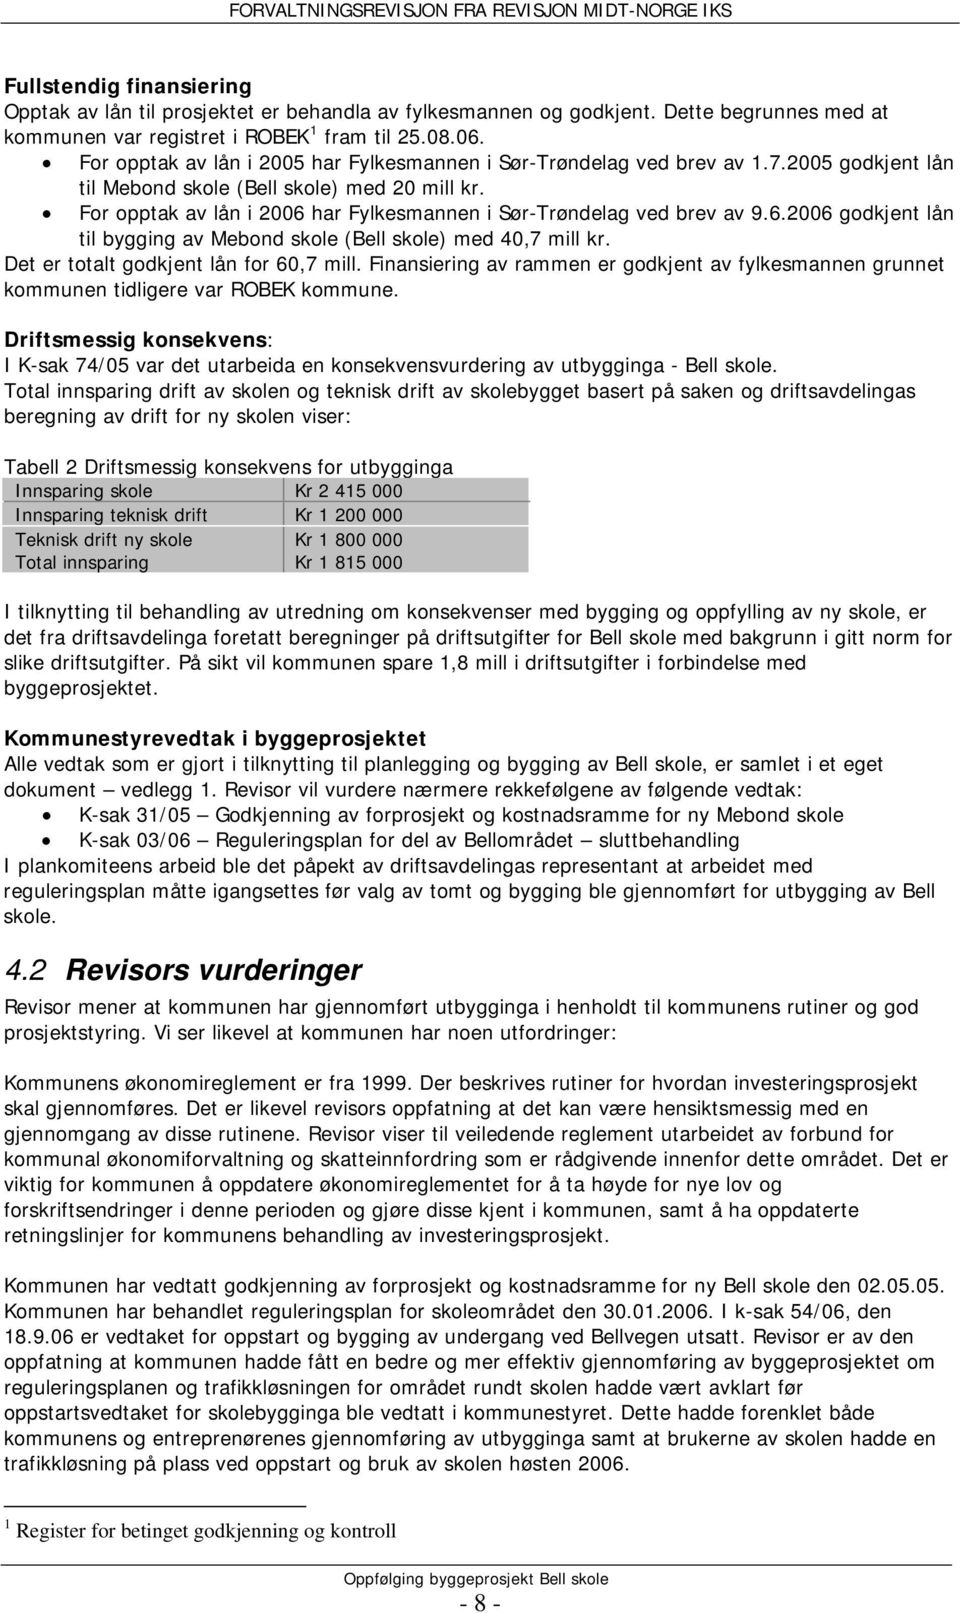 For opptak av lån i 2006 har Fylkesmannen i Sør-Trøndelag ved brev av 9.6.2006 godkjent lån til bygging av Mebond skole (Bell skole) med 40,7 mill kr. Det er totalt godkjent lån for 60,7 mill.